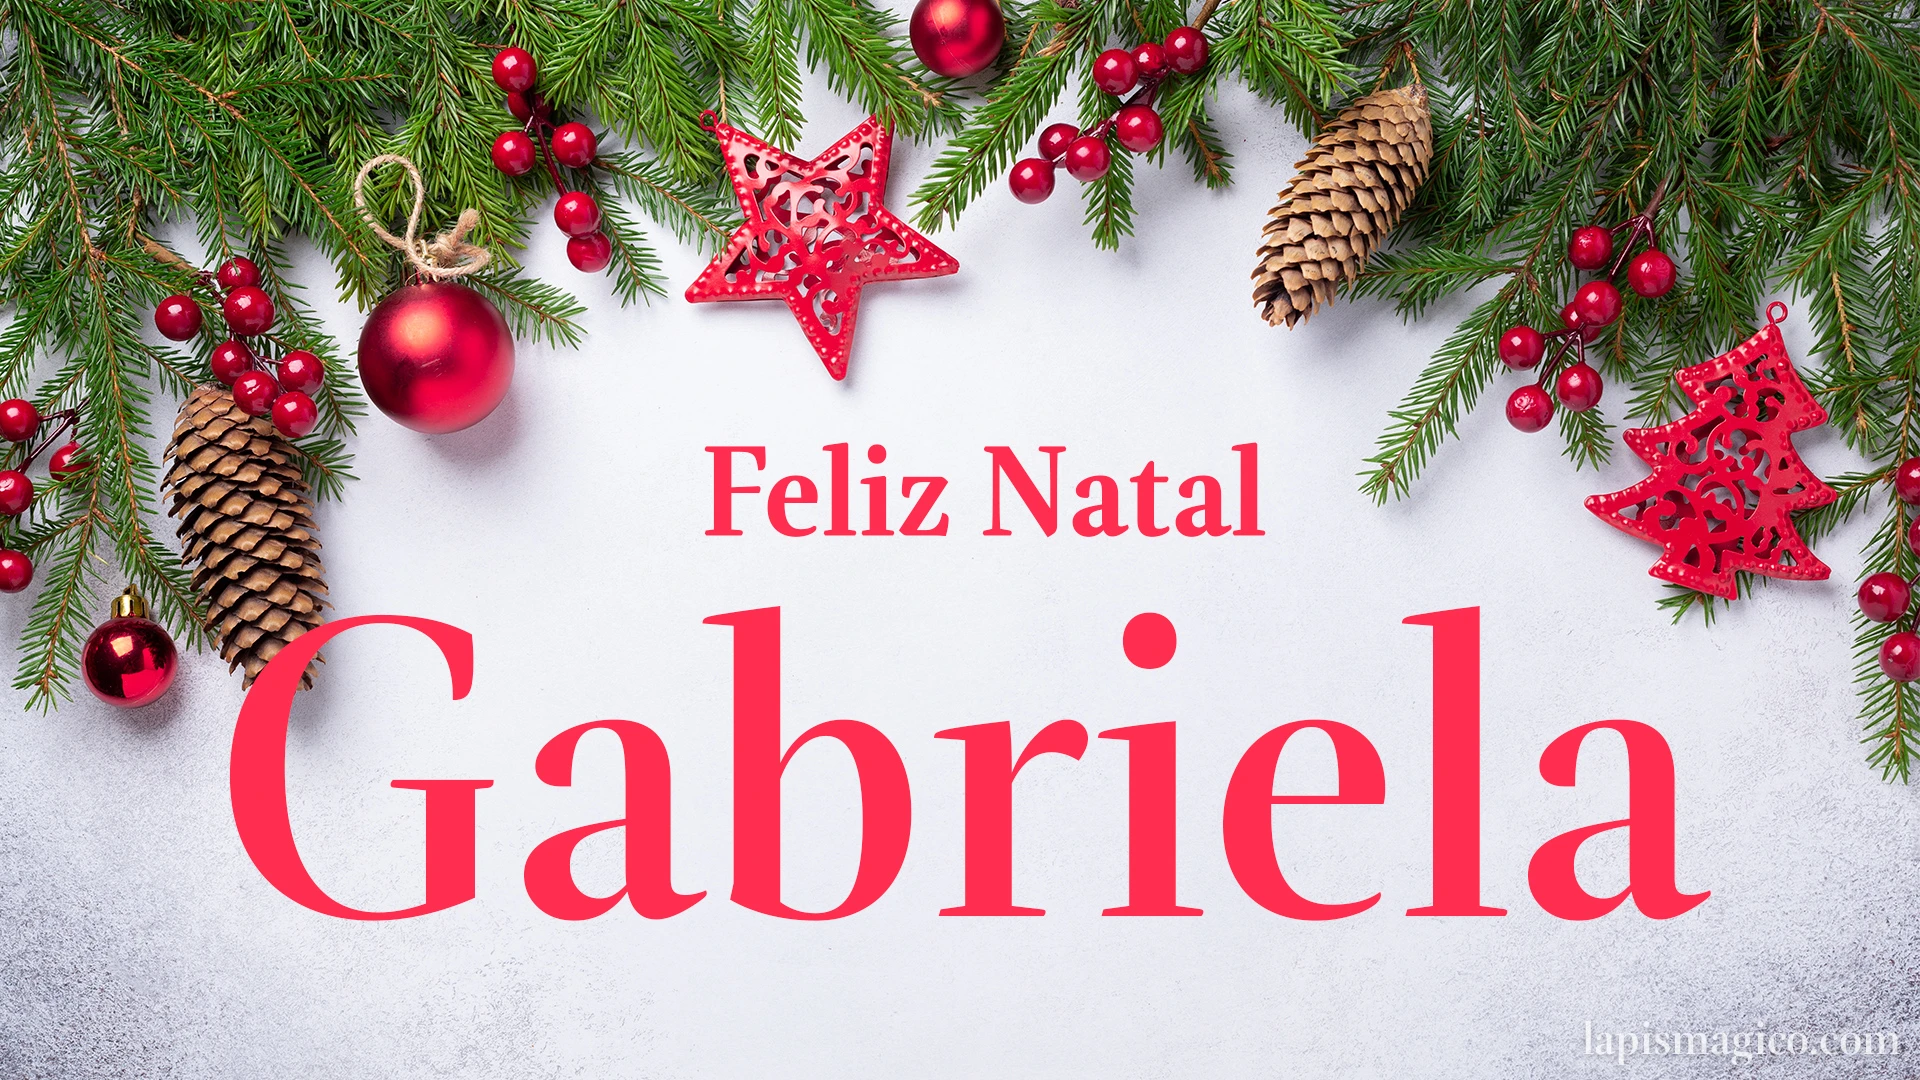 Oh Gabriela, cinco postais de Feliz Natal Postal com o teu nome